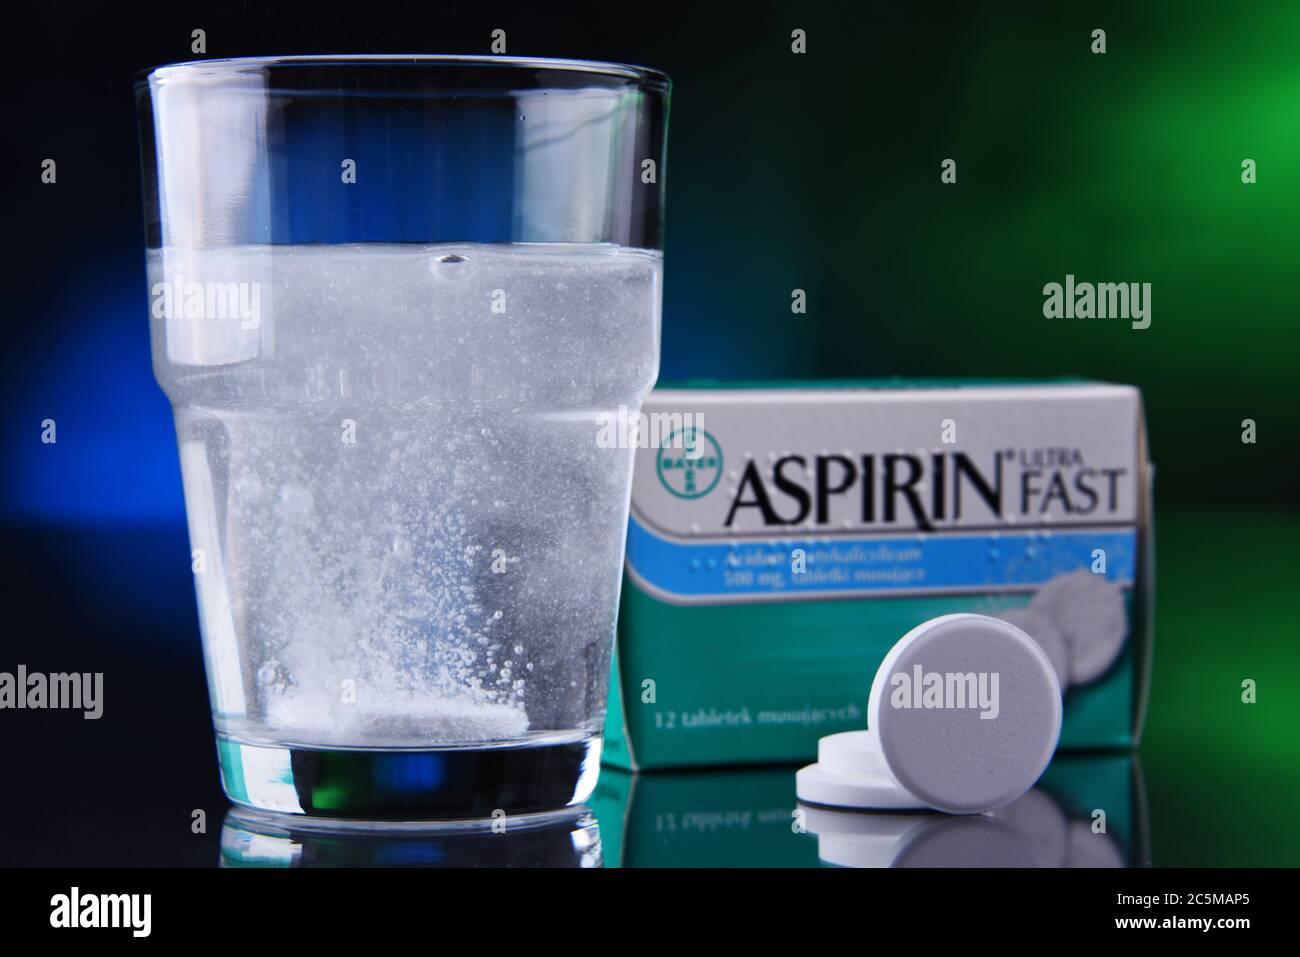 POZNAN, POL - 17 GENNAIO 2020: Confezione di Aspirina, marca di farmaci popolari, il primo e più noto prodotto di Bayer, multinazionale farmaceutica tedesca Foto Stock